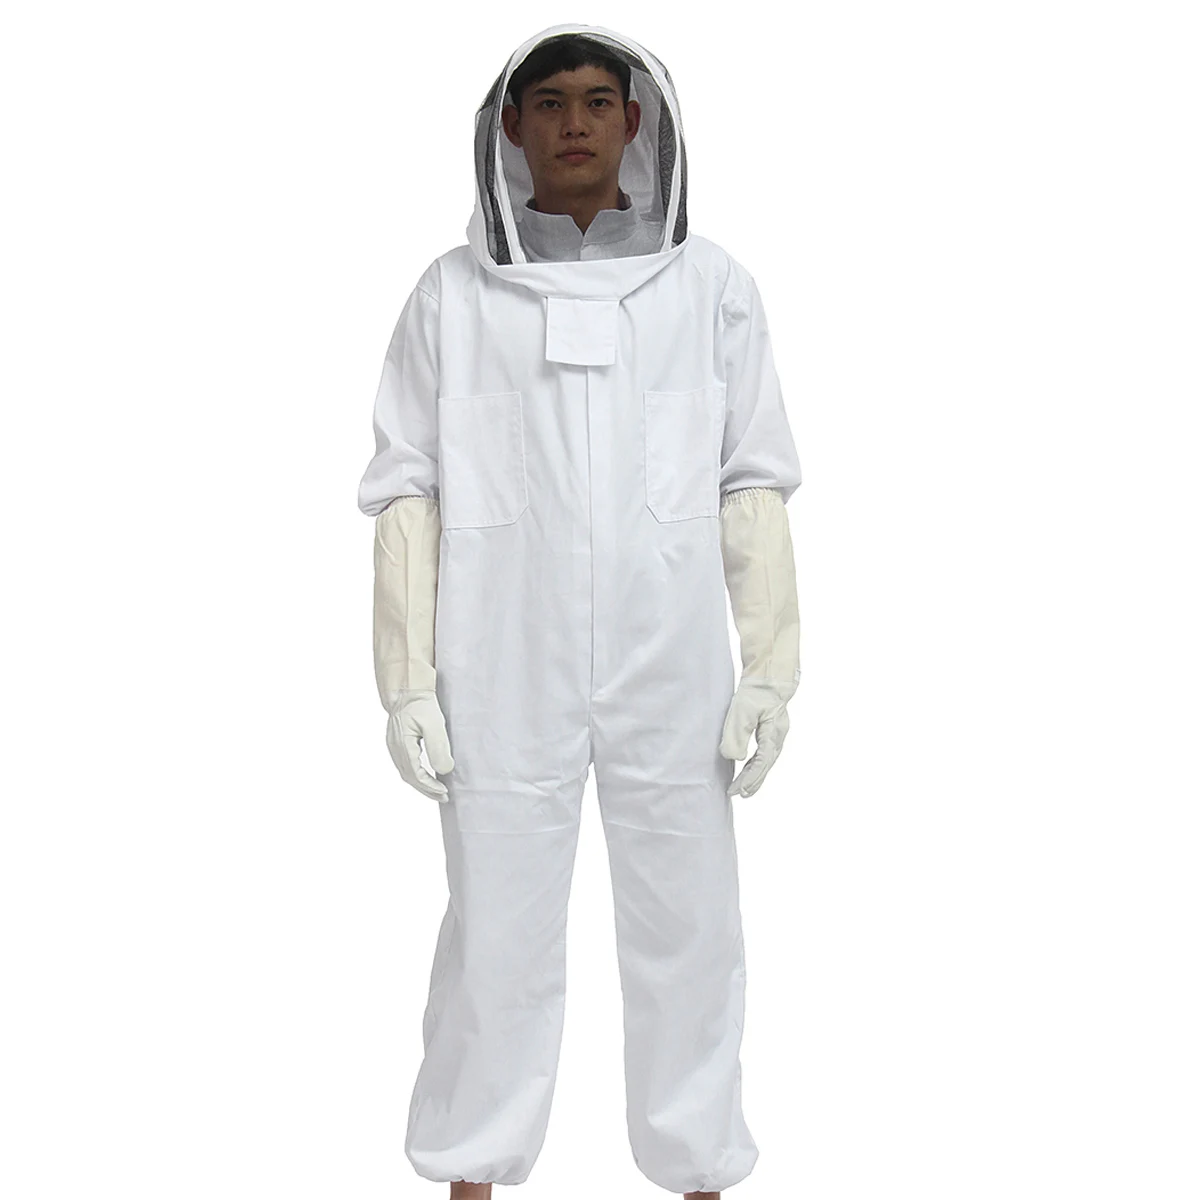 Пчеловод пчела костюм спецовка пчеловодства костюм + защита от пчел перчатки из козьей кожи безопасная одежда